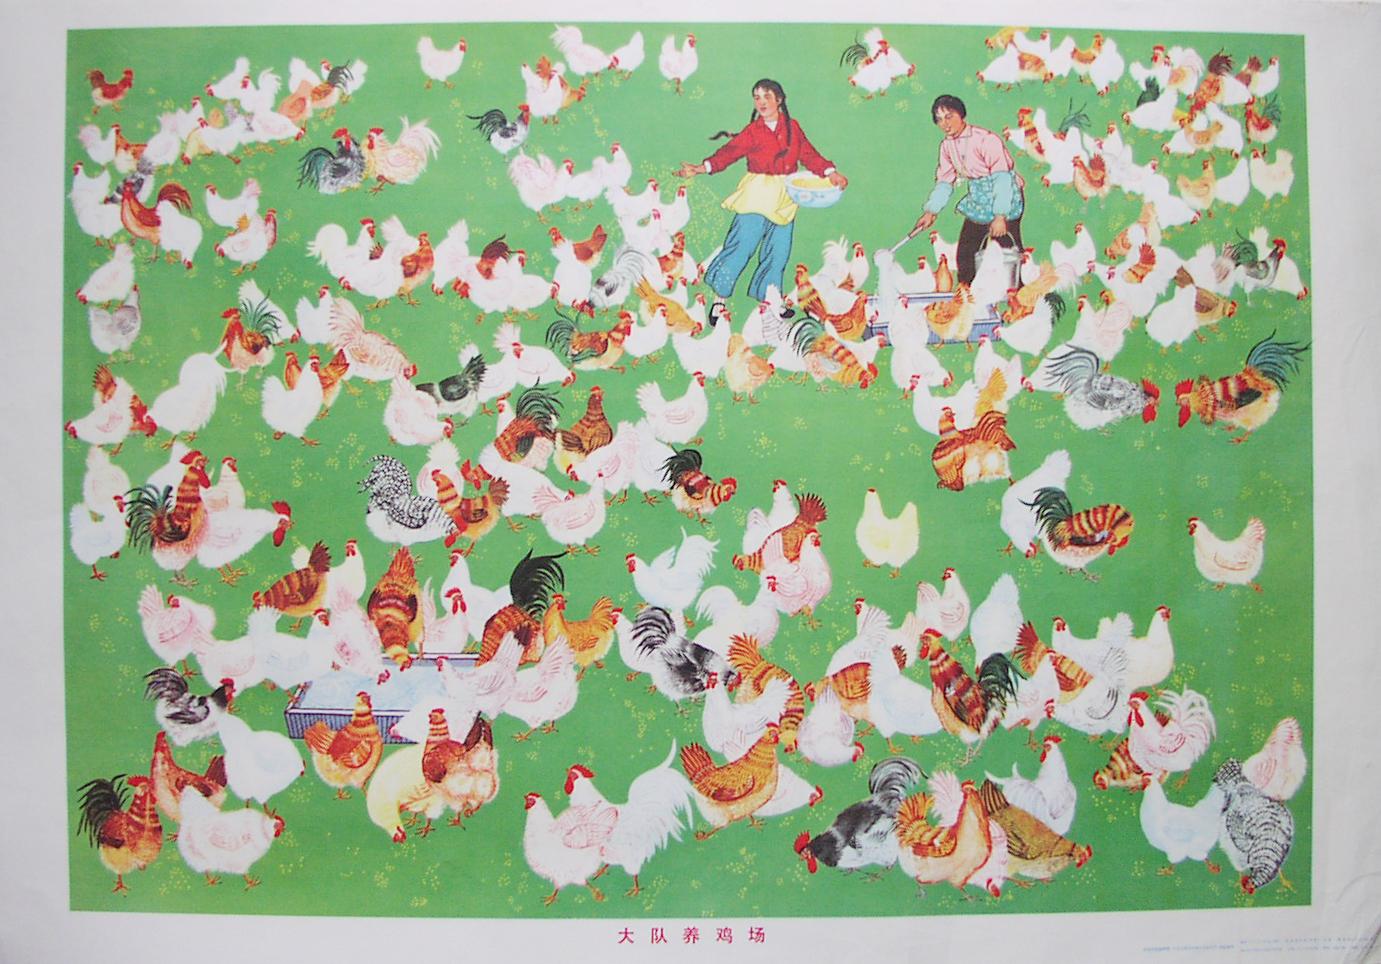 Unknown Animal Print - Brigade Chicken Farm, 1973.